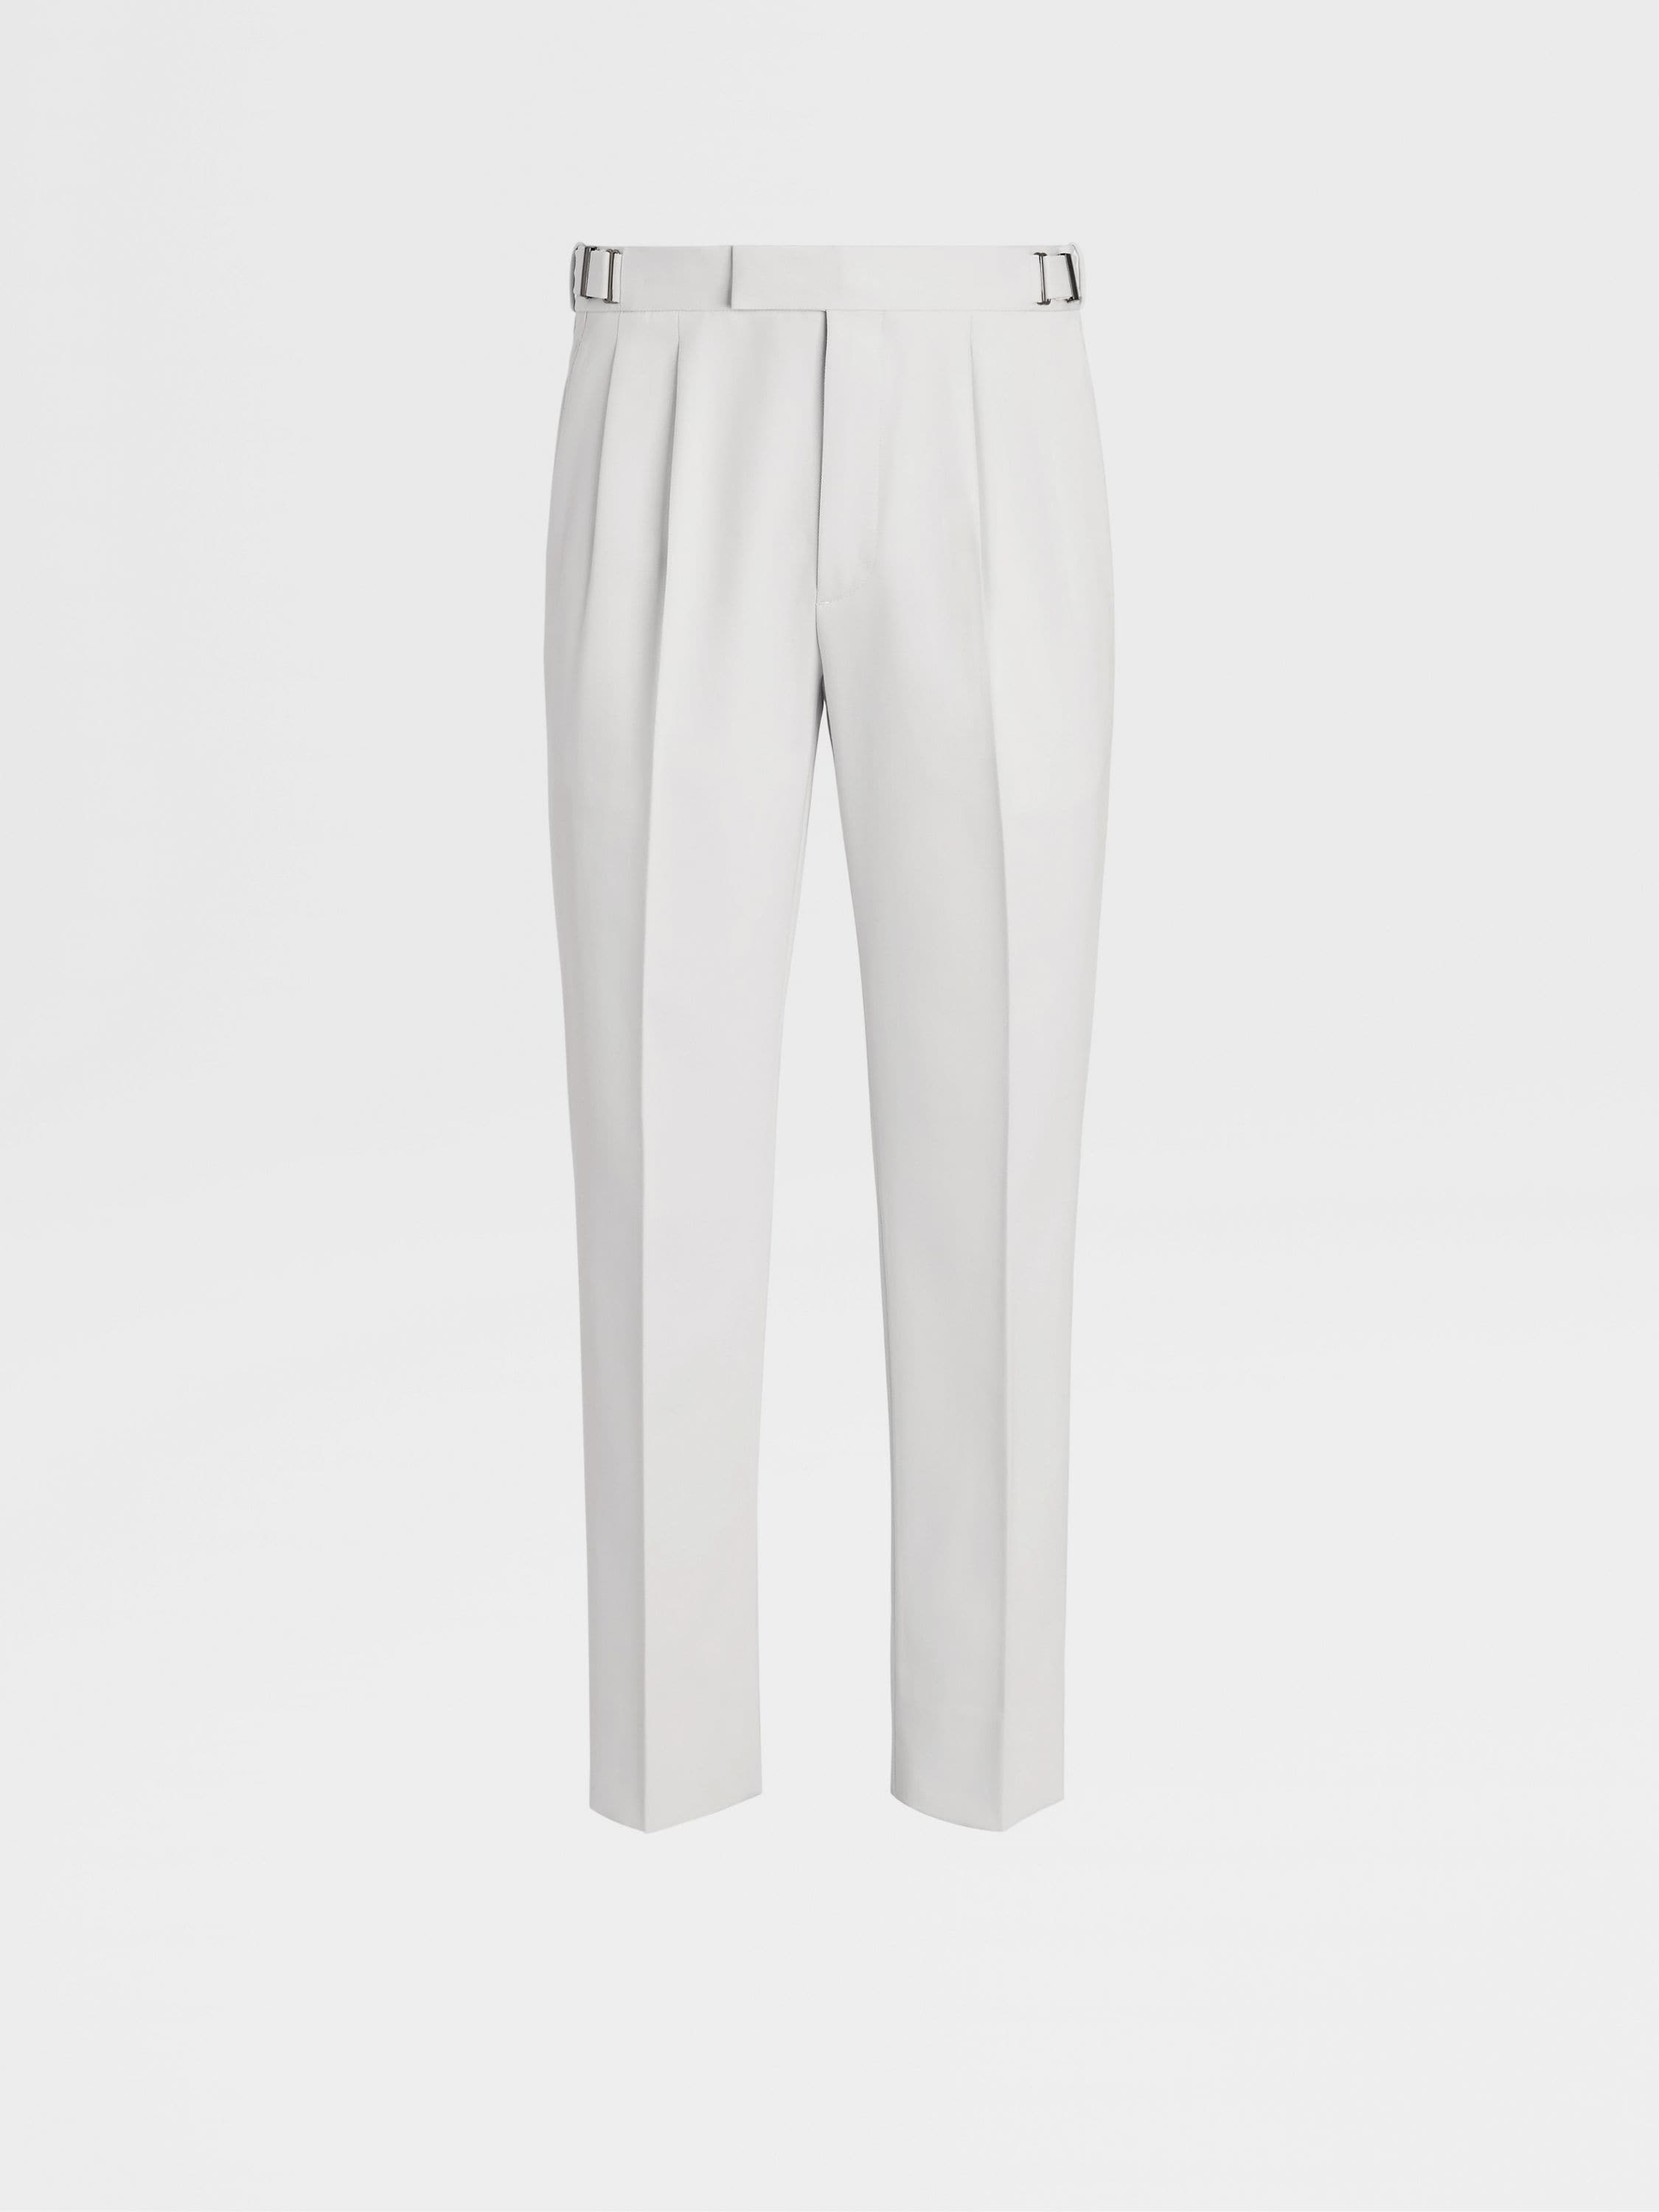 Buy Tina palazzo pants (pre order) - PANTS | La Croixé